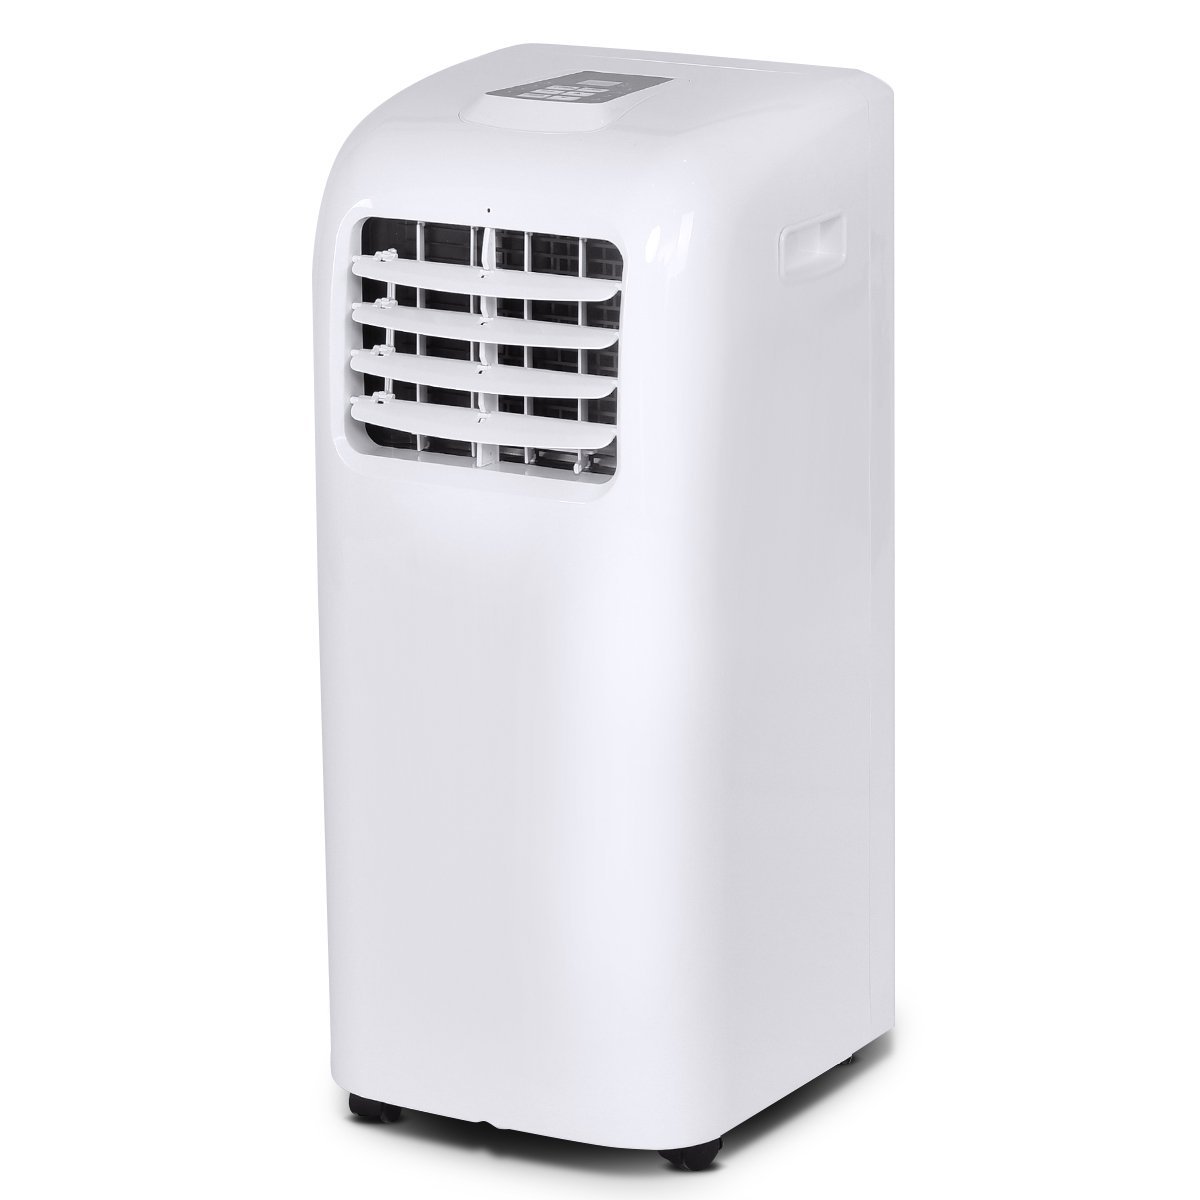 COSTWAY 10,000 BTU Portable Air Conditioner Dehumidifier Function